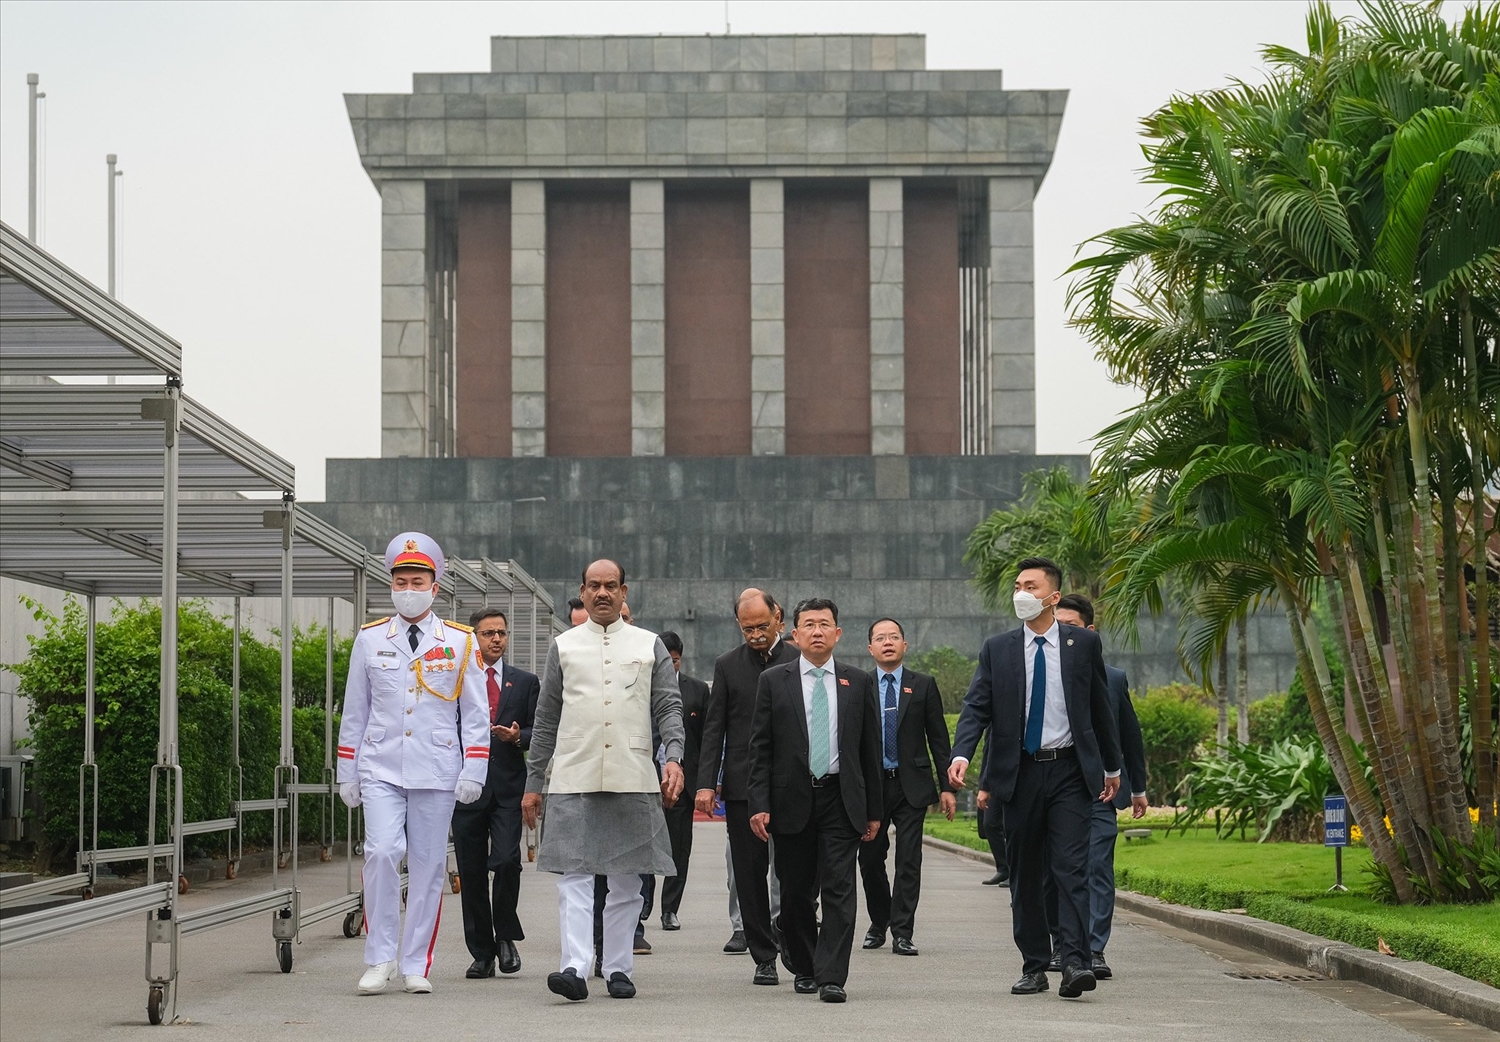 Chủ tịch Hạ nghị viện Ấn Độ Om Birla tưởng nhớ Chủ tịch Hồ Chí Minh – người anh hùng của dân tộc Việt Nam